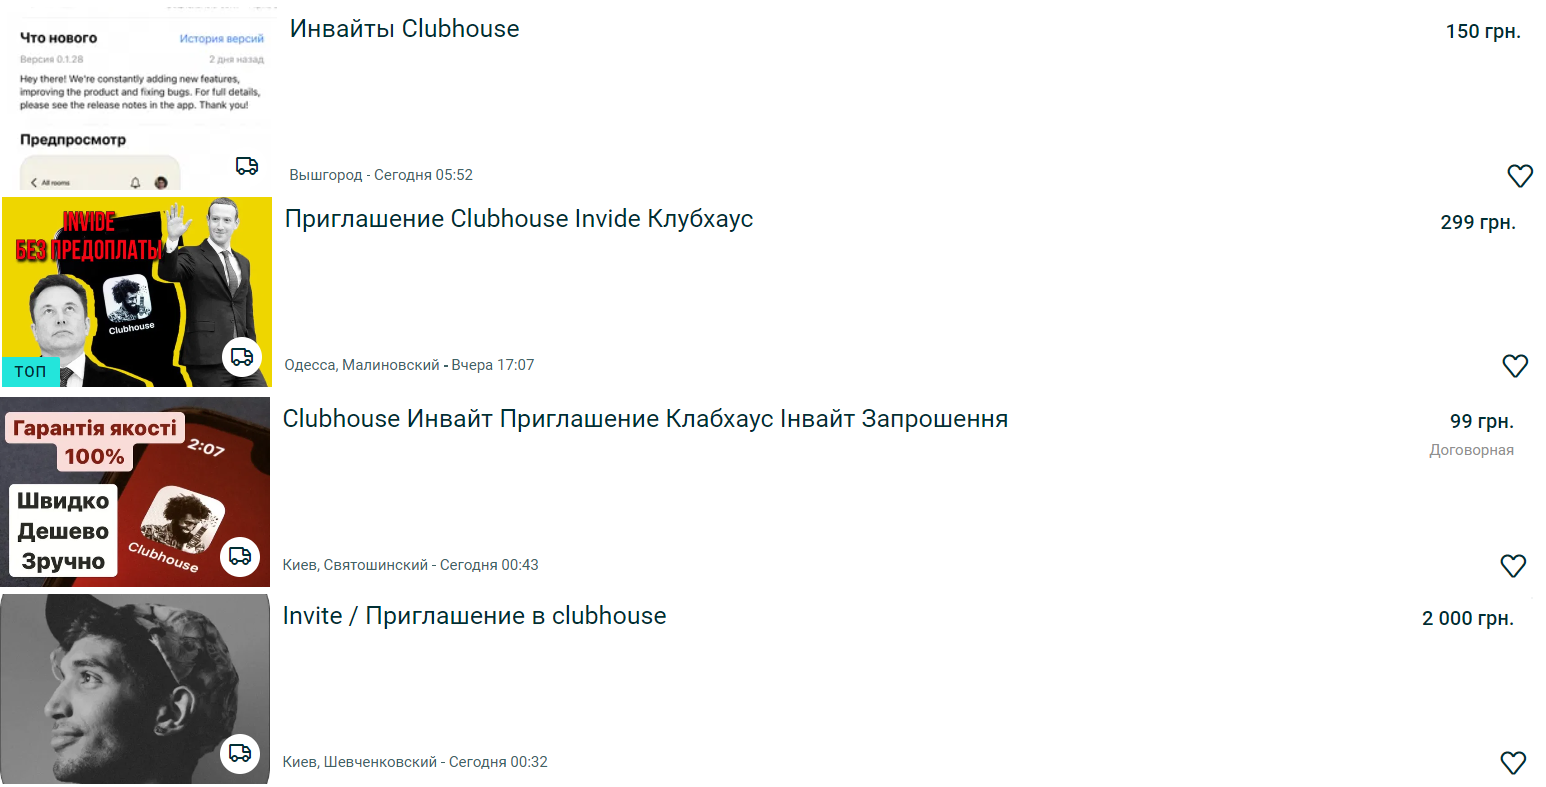 Українці почали активно продавати запрошення в Clubhouse: скільки коштують інвайти